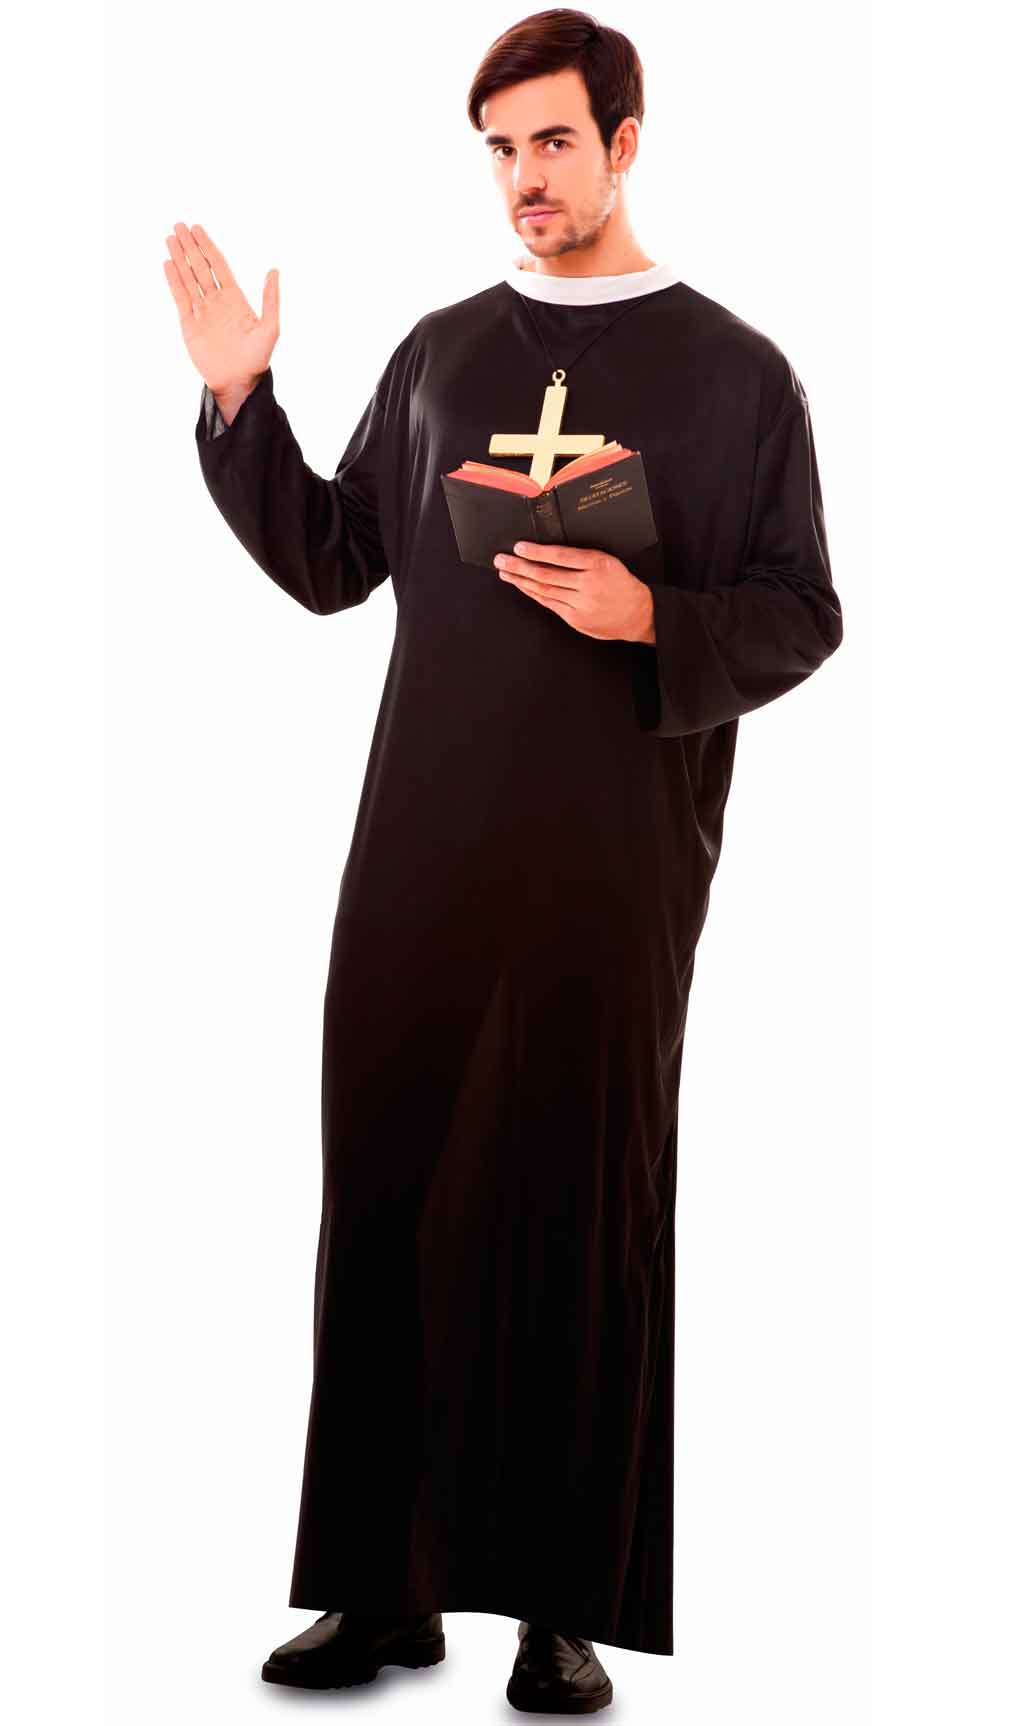 Costume da prete greco per un ragazzo